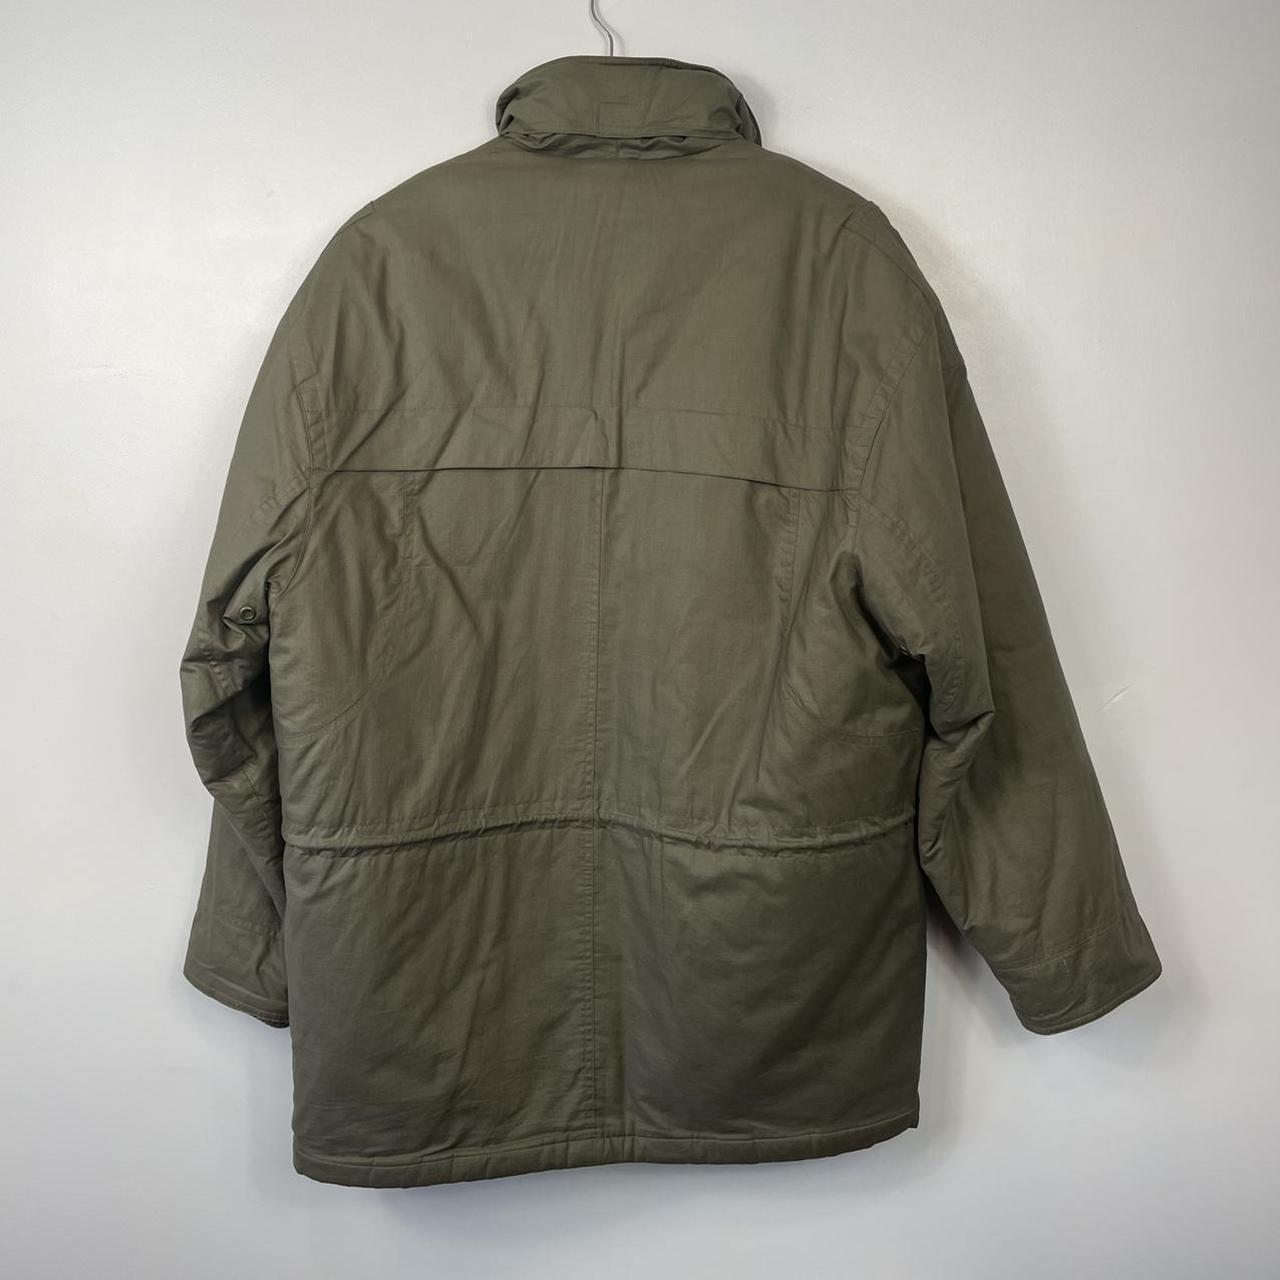 Vintage 90s St Michael Quilted Jacket/Coat, Khaki,... - Depop